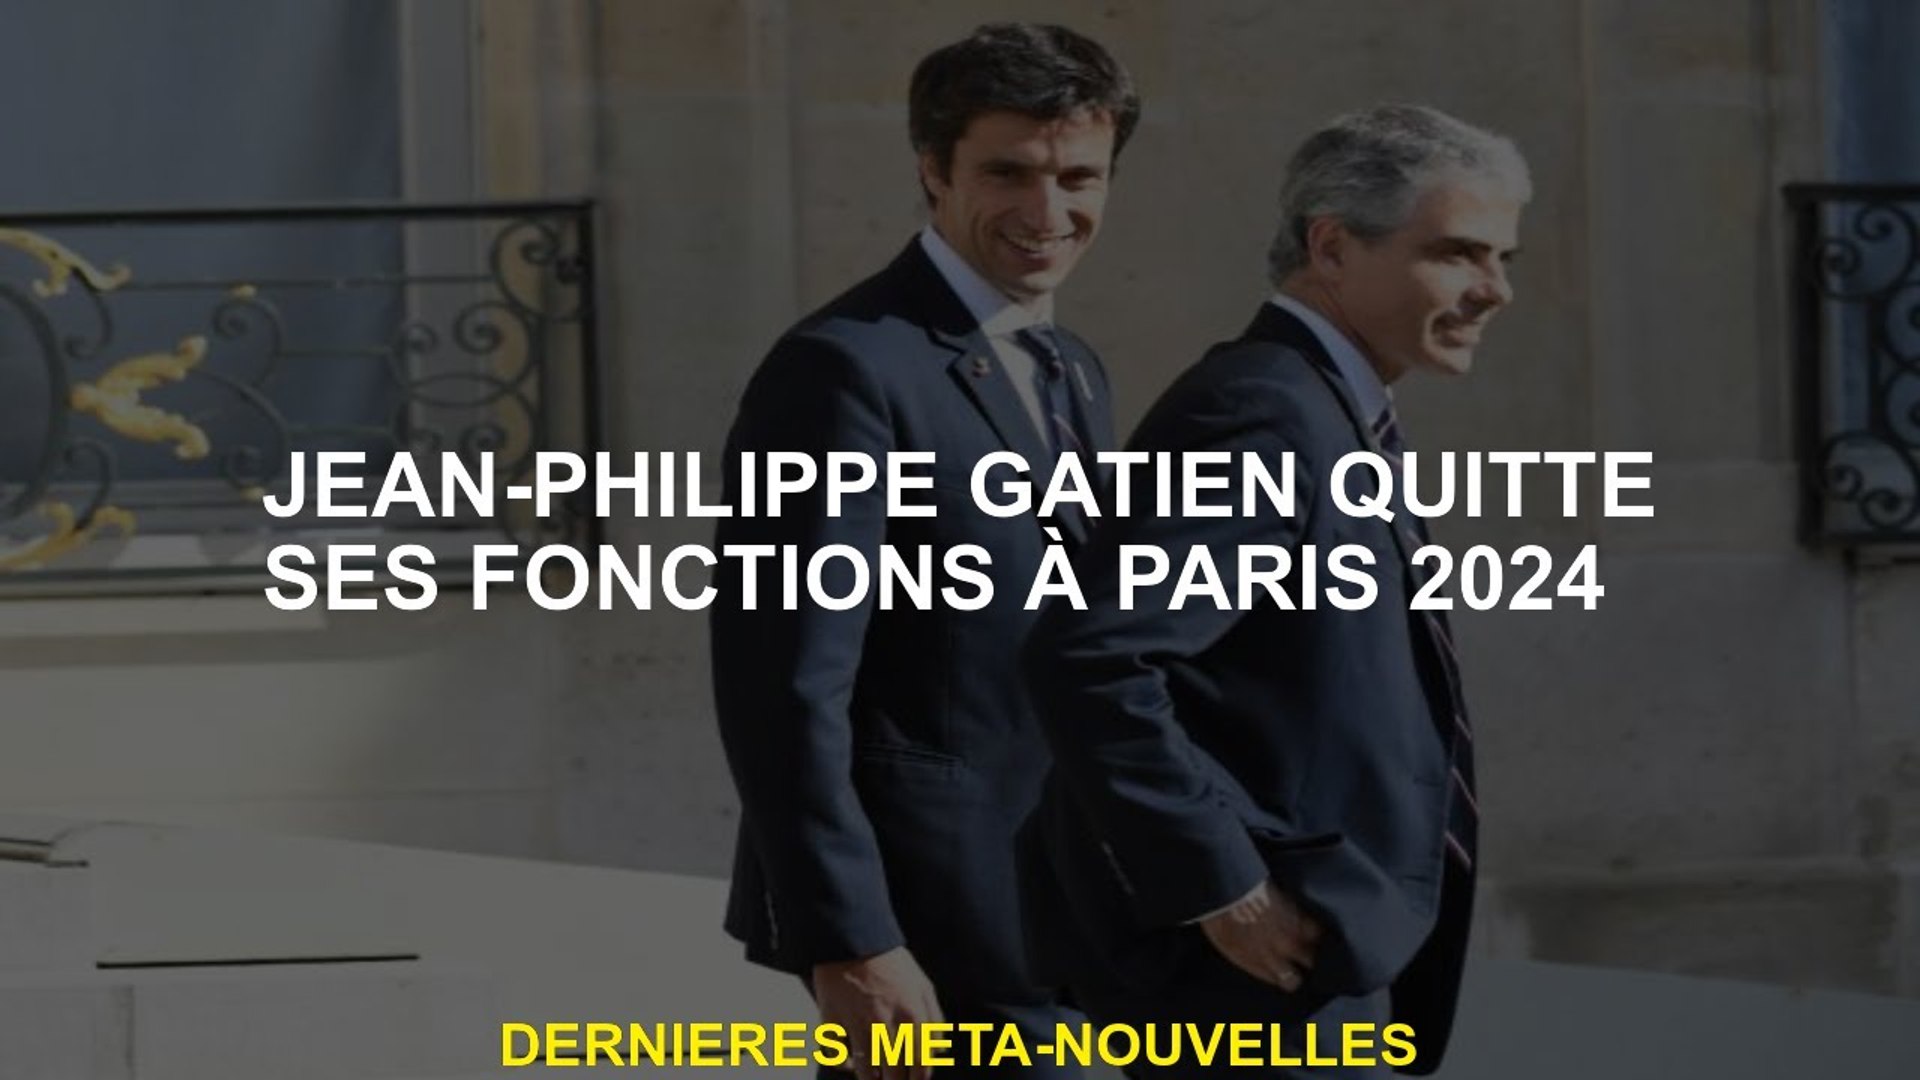 Jean-Philippe Gatien quitte ses fonctions à Paris 2024 - Vidéo Dailymotion